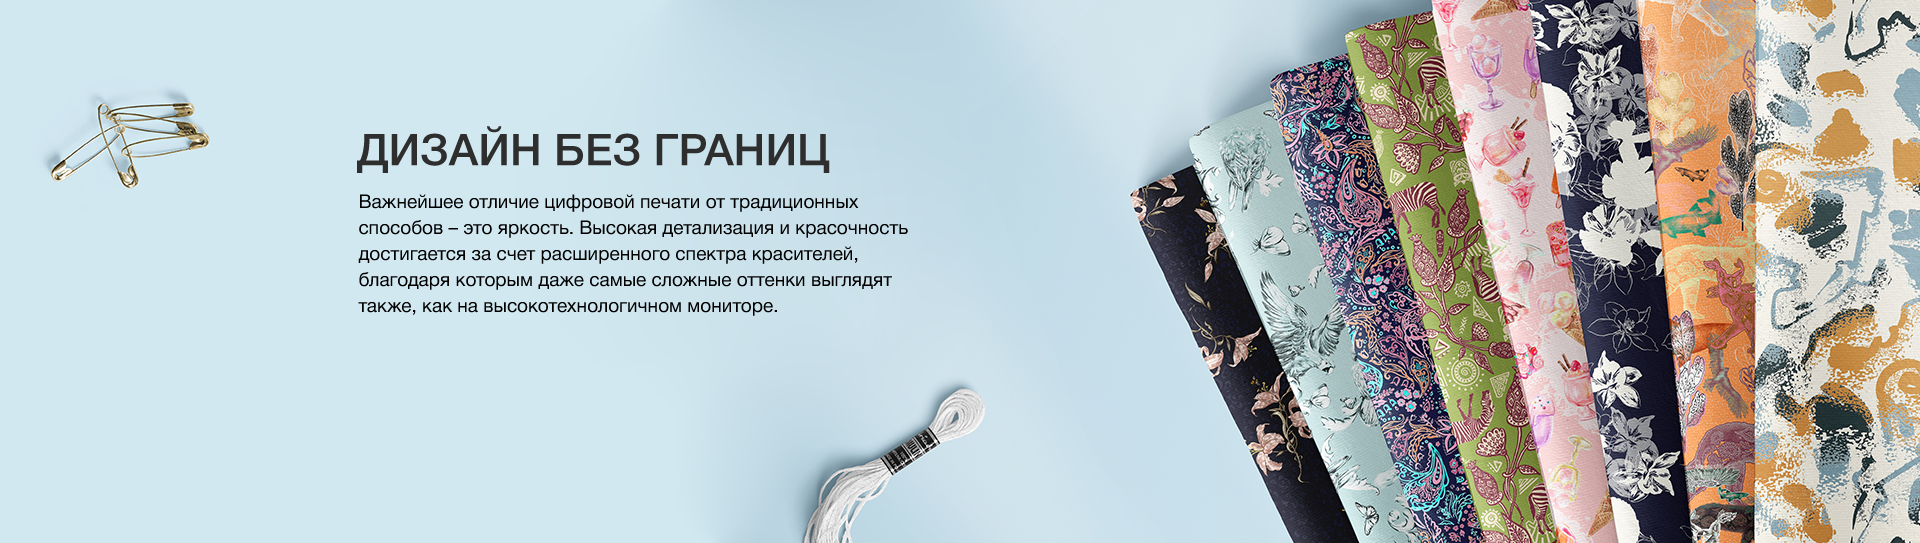 Digital Textile: Печать на натуральных тканях с доставкой по всей России